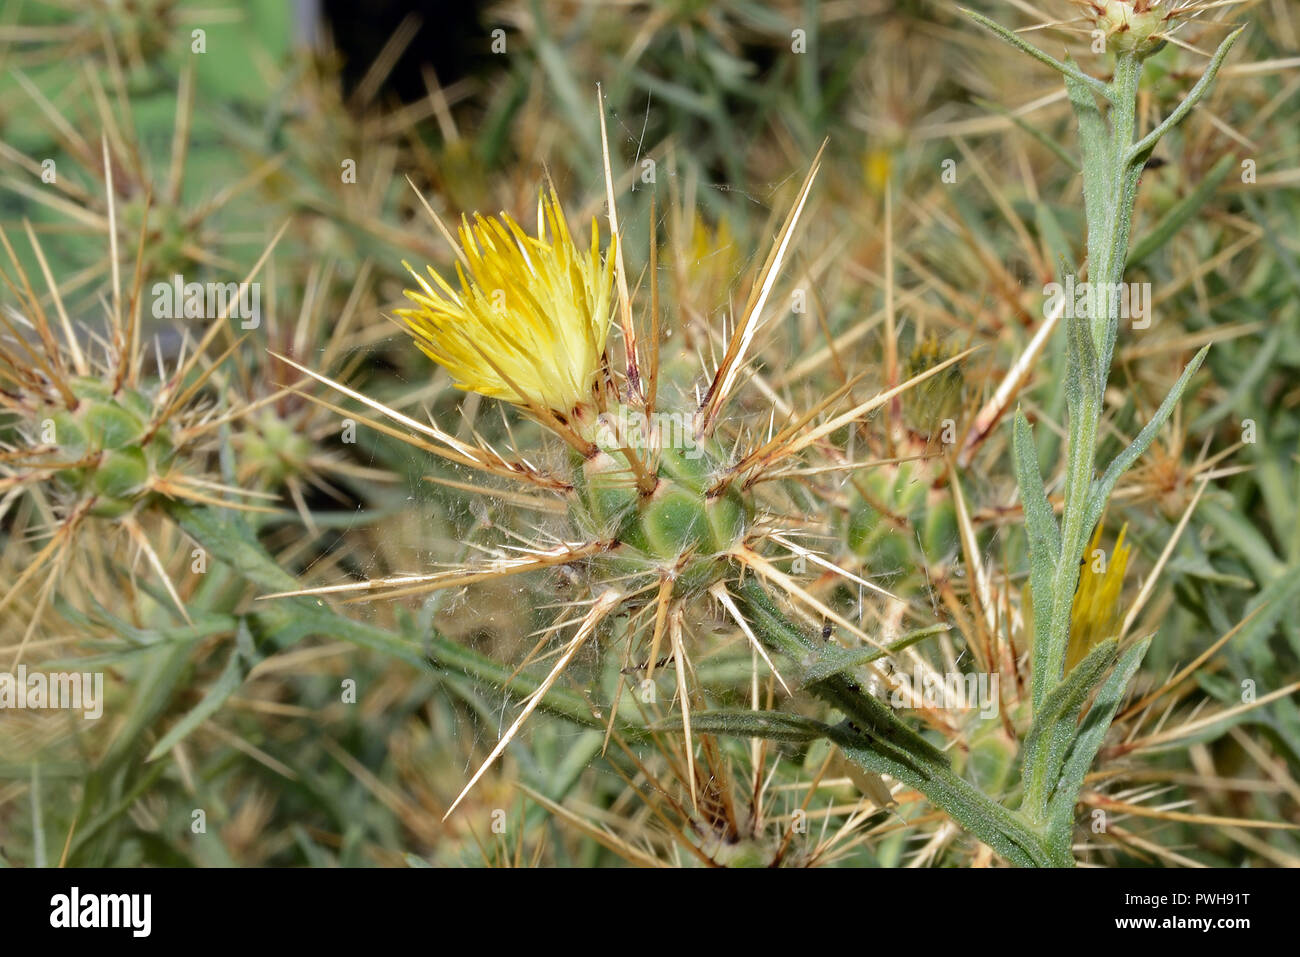 Centaurea maroccana è nativo per il sud-est della penisola iberica e il Nord Africa dove si verifica in condizioni aride. Foto Stock